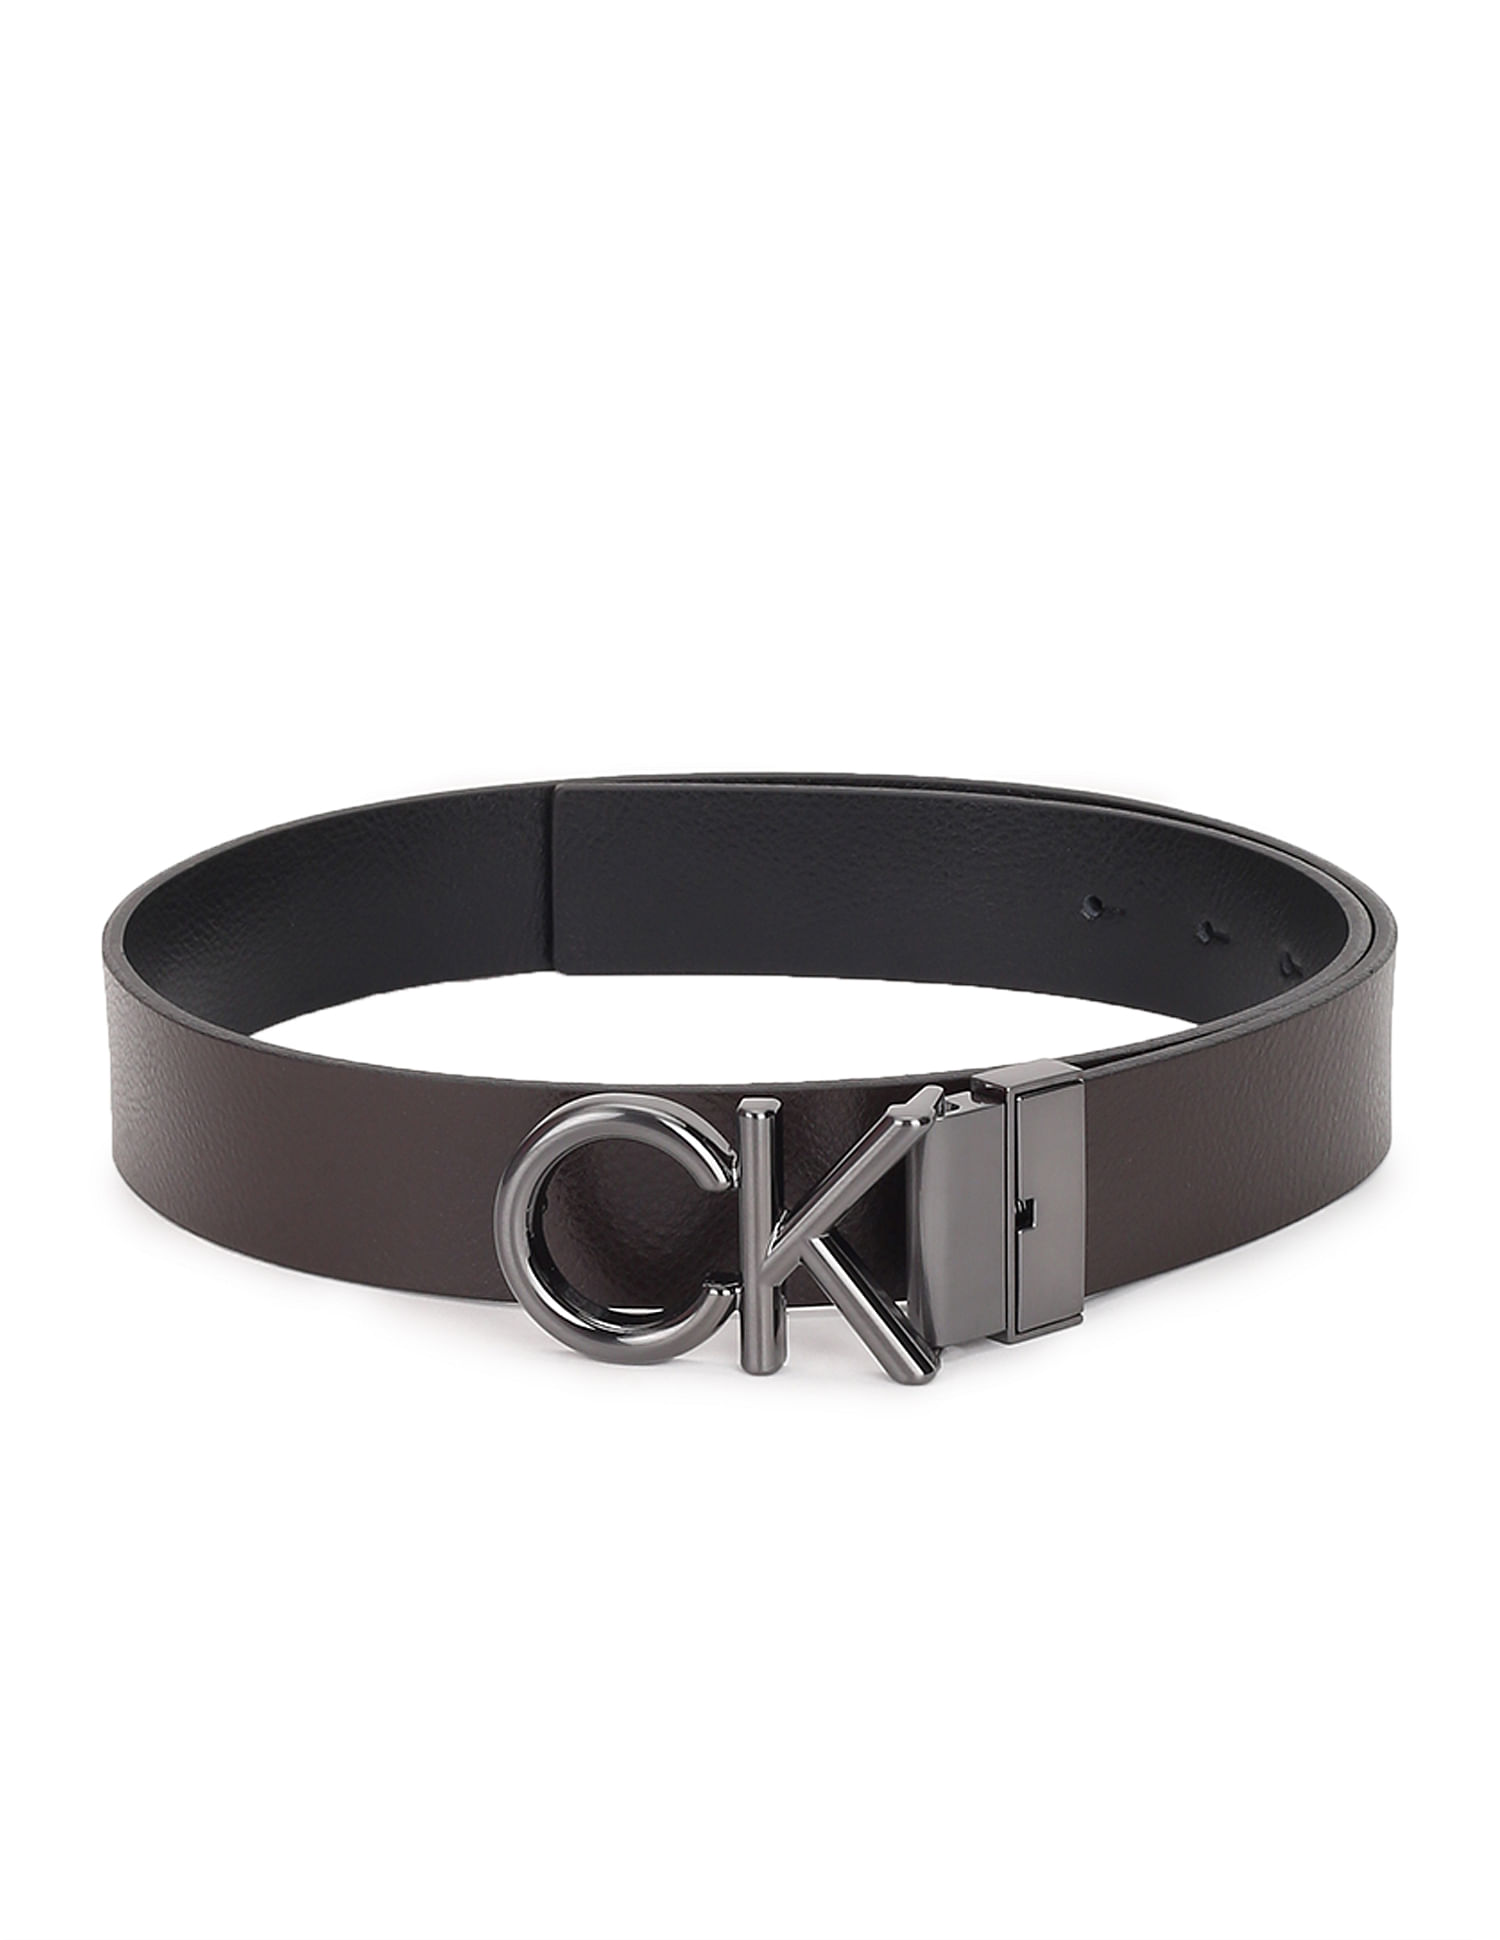 Calvin Klein Adjustable Leather Belt, Black at John Lewis & Partners